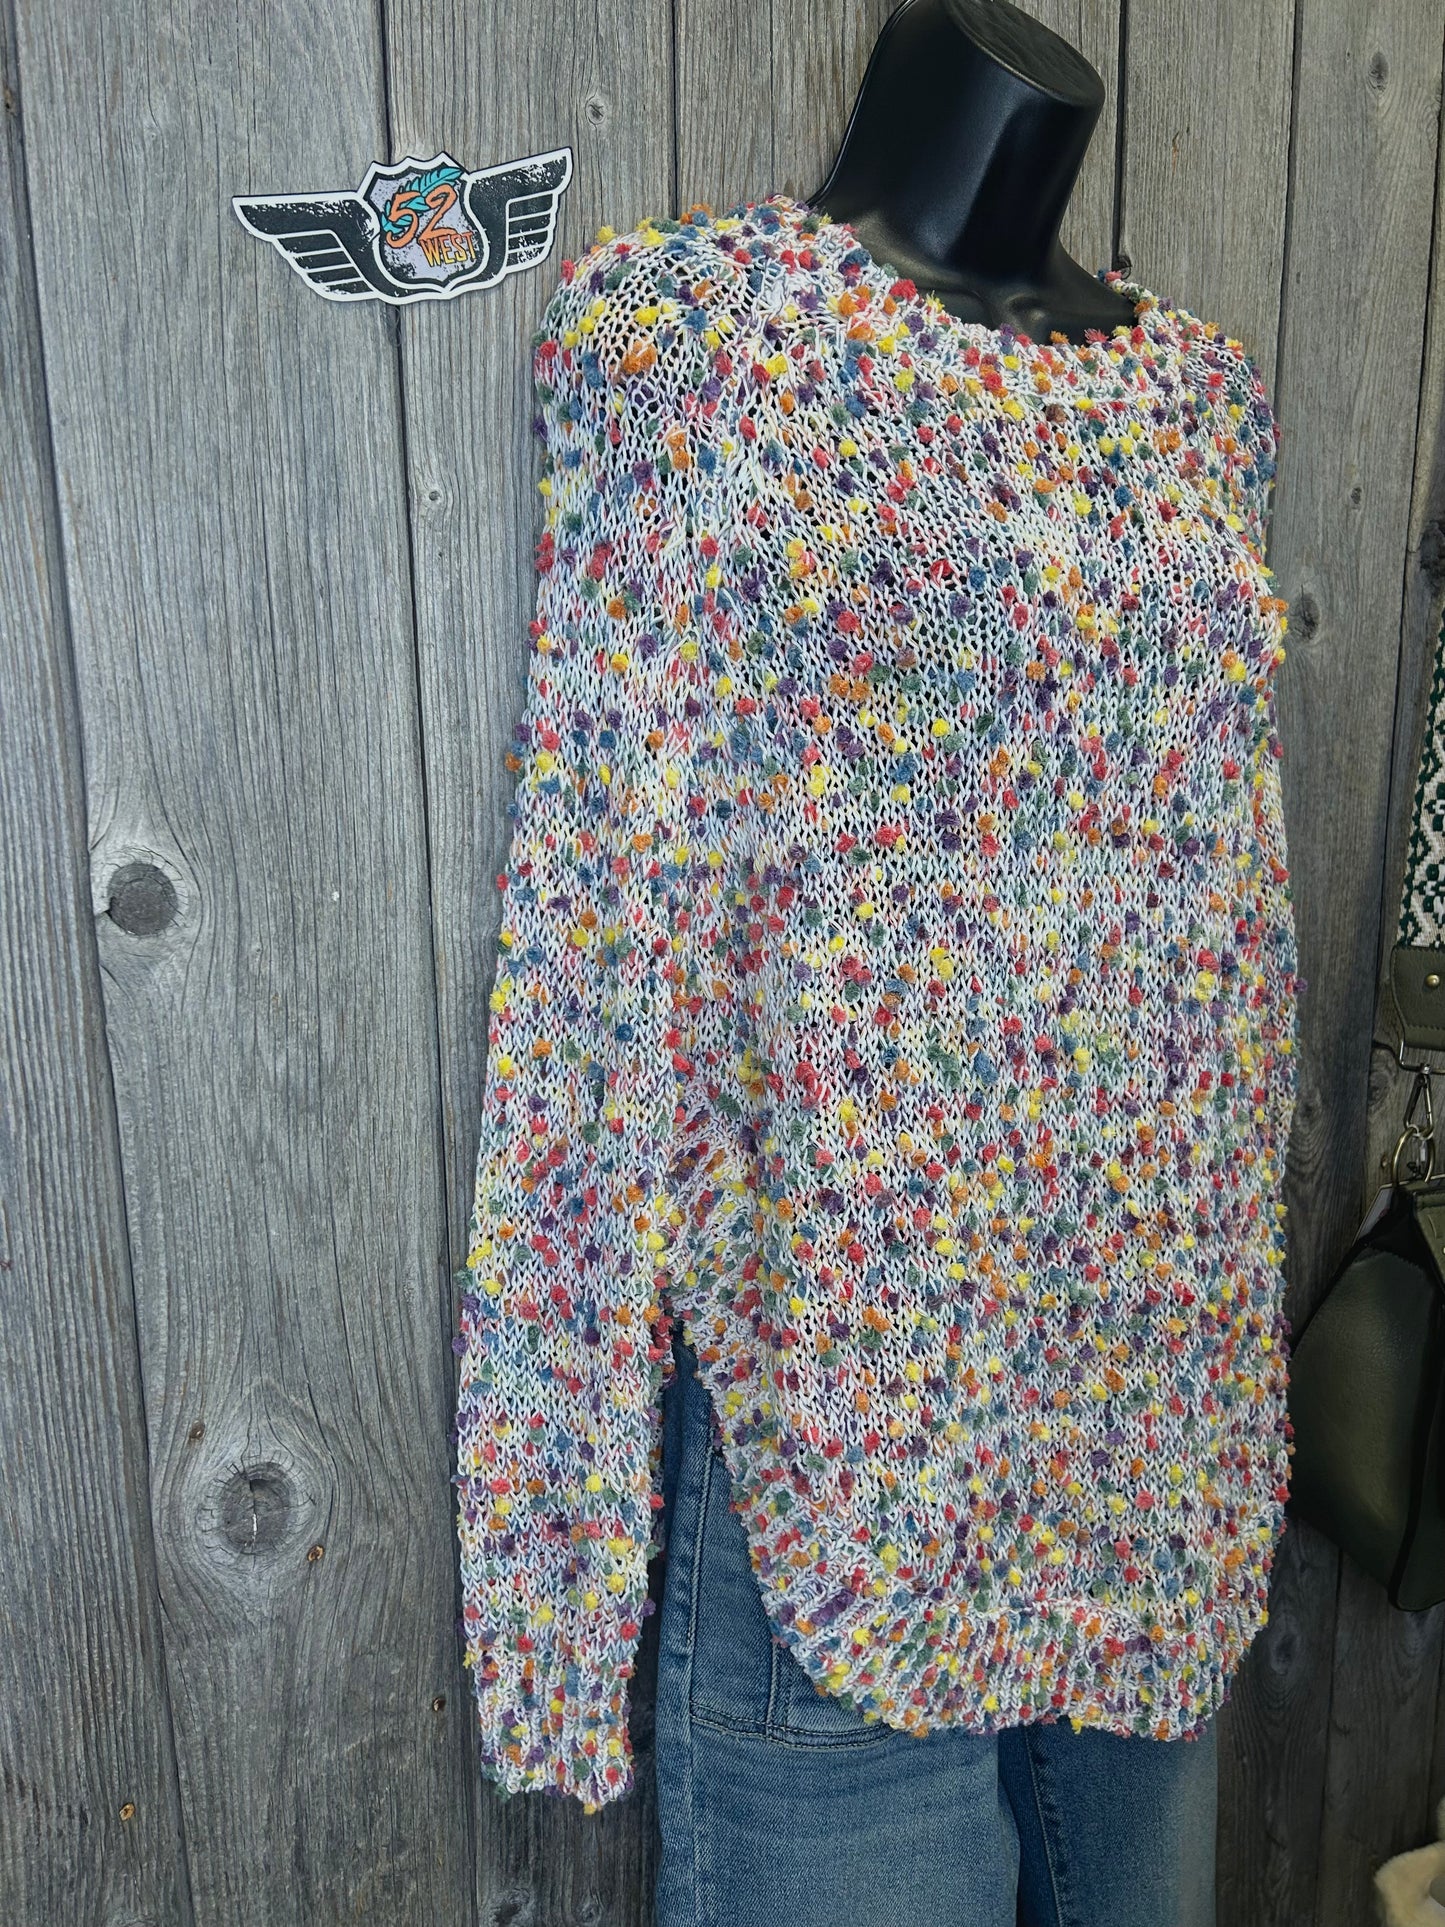 Confetti Knit Sweater